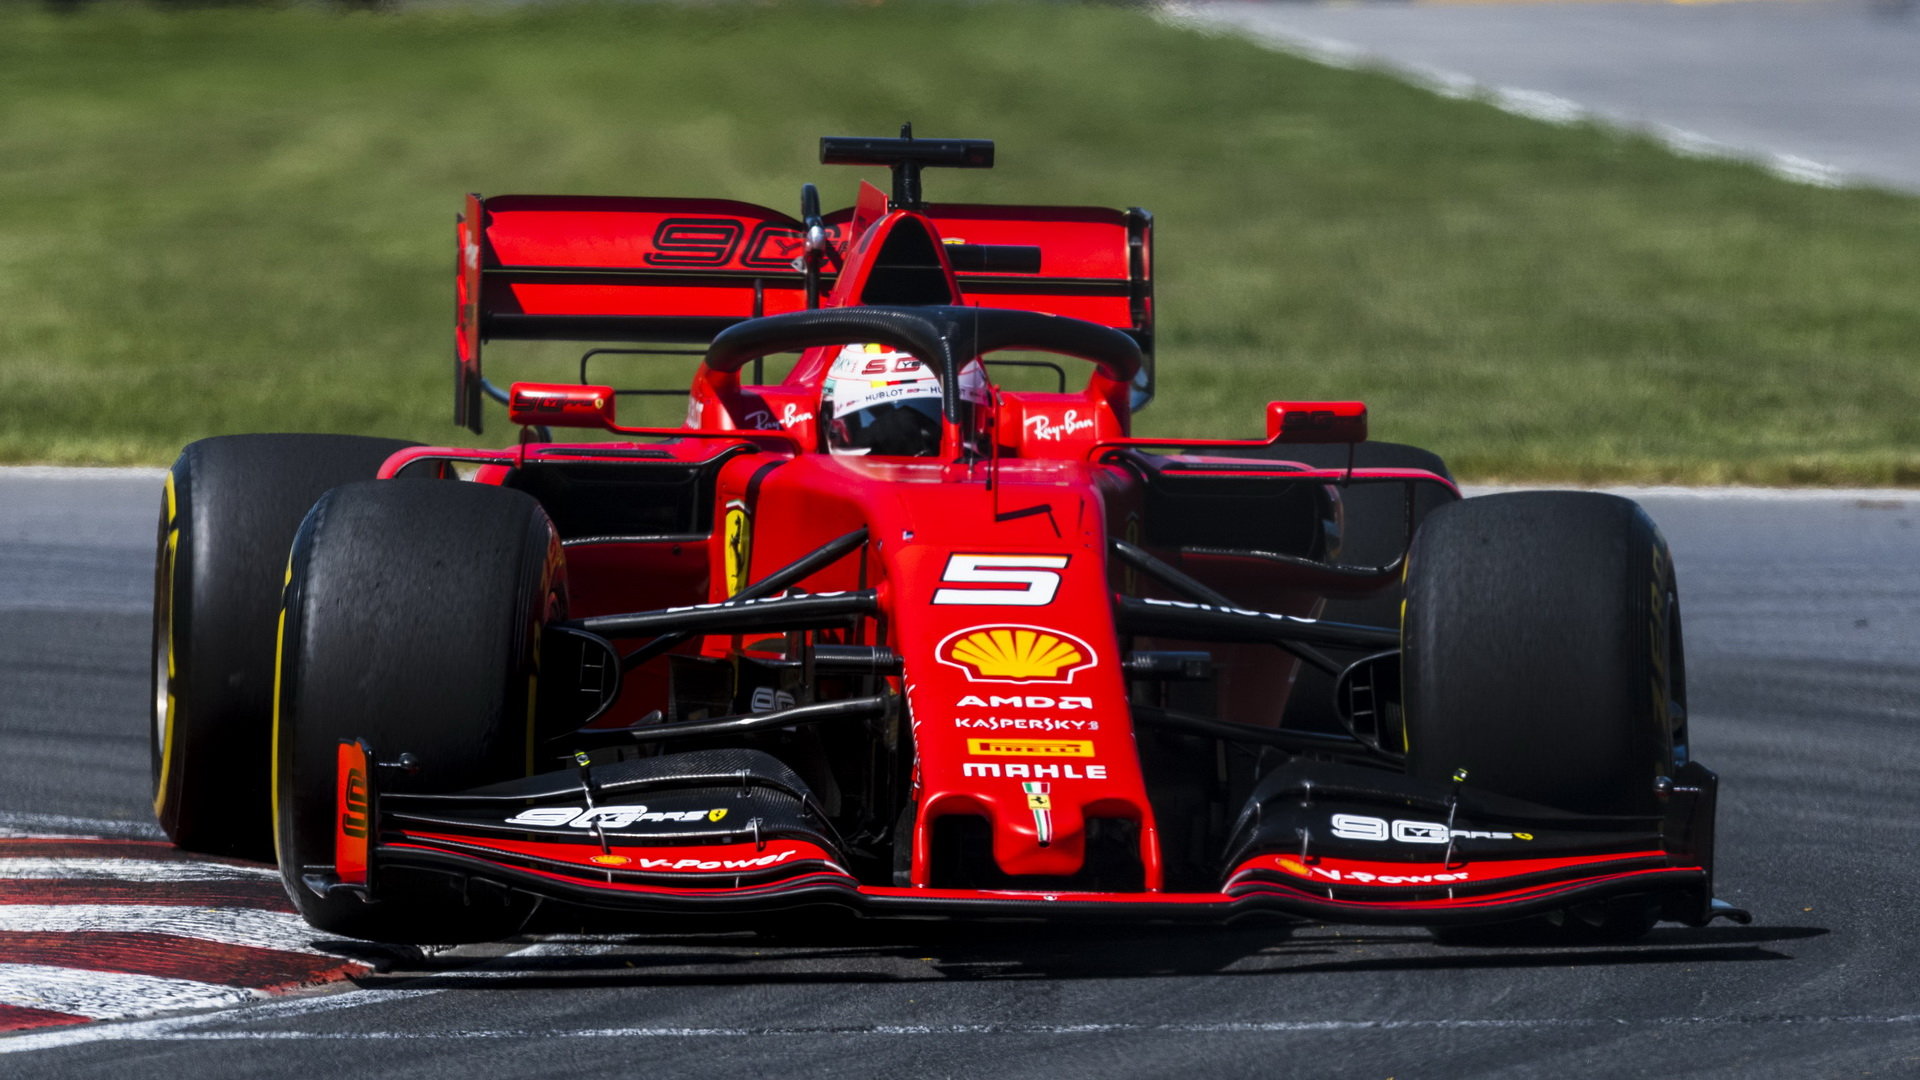 Sebastian Vettel v závodě v Kanadě